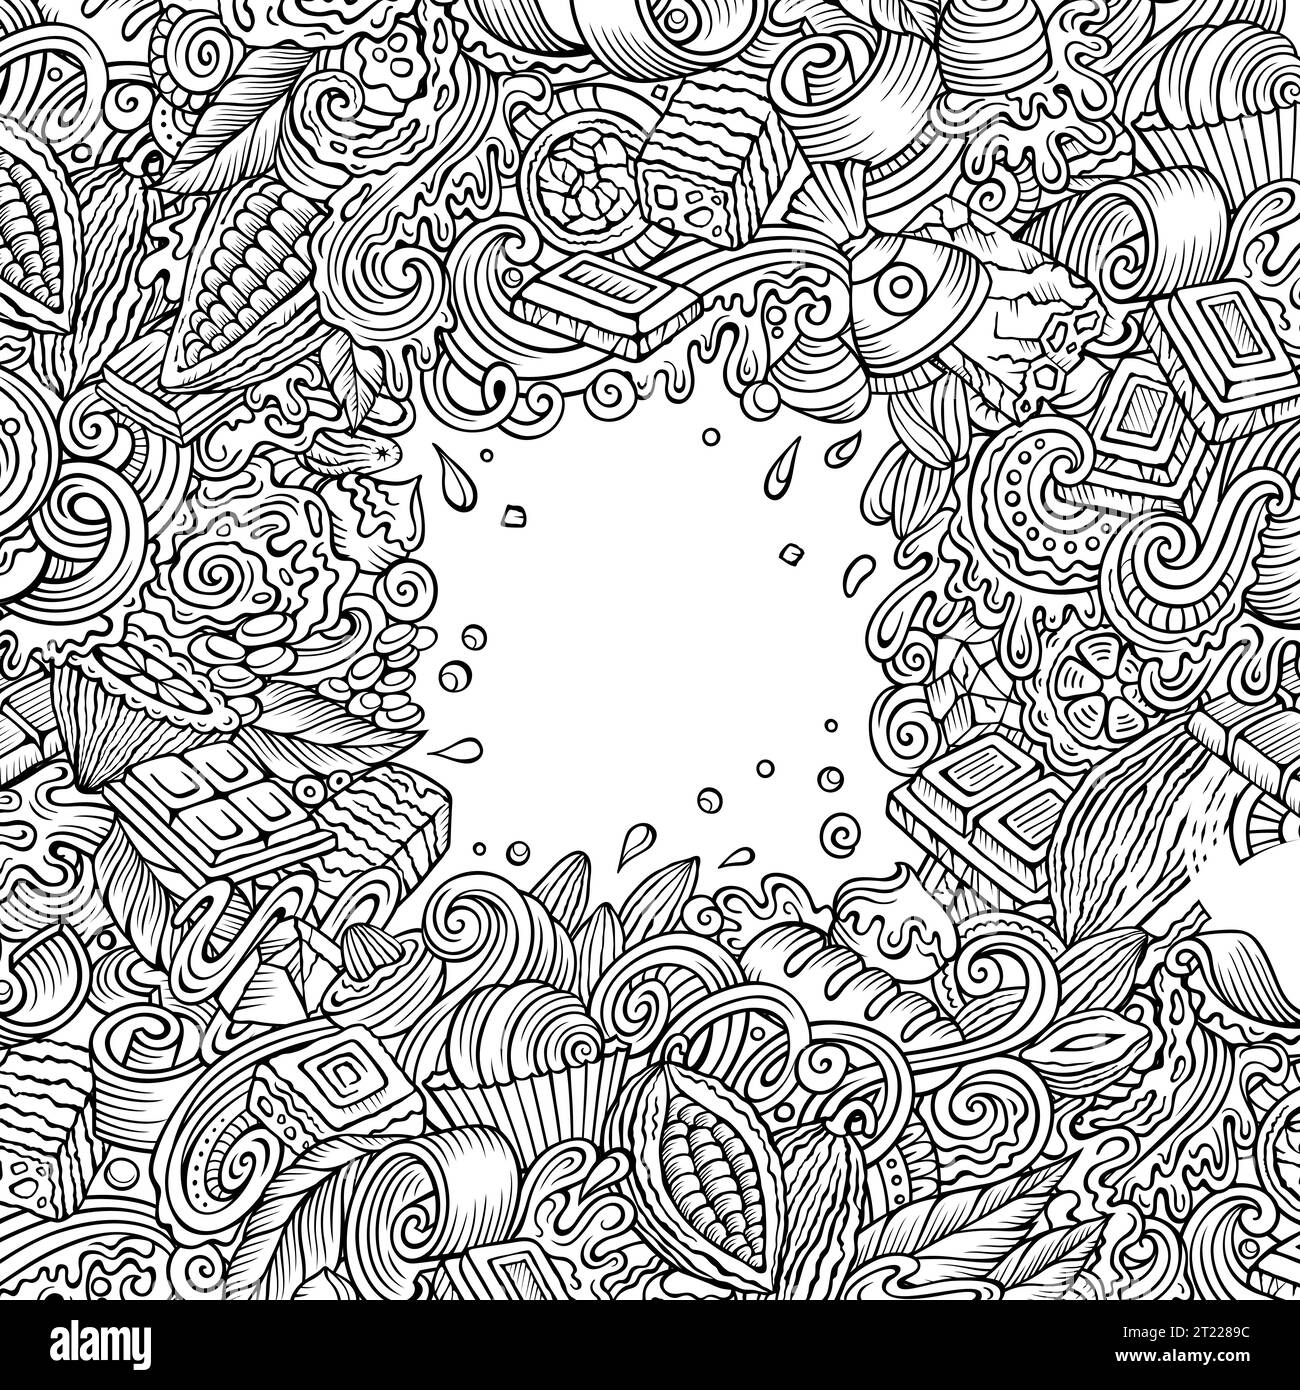 Cornice di doodles vettoriali disegnati a mano al cioccolato Illustrazione Vettoriale